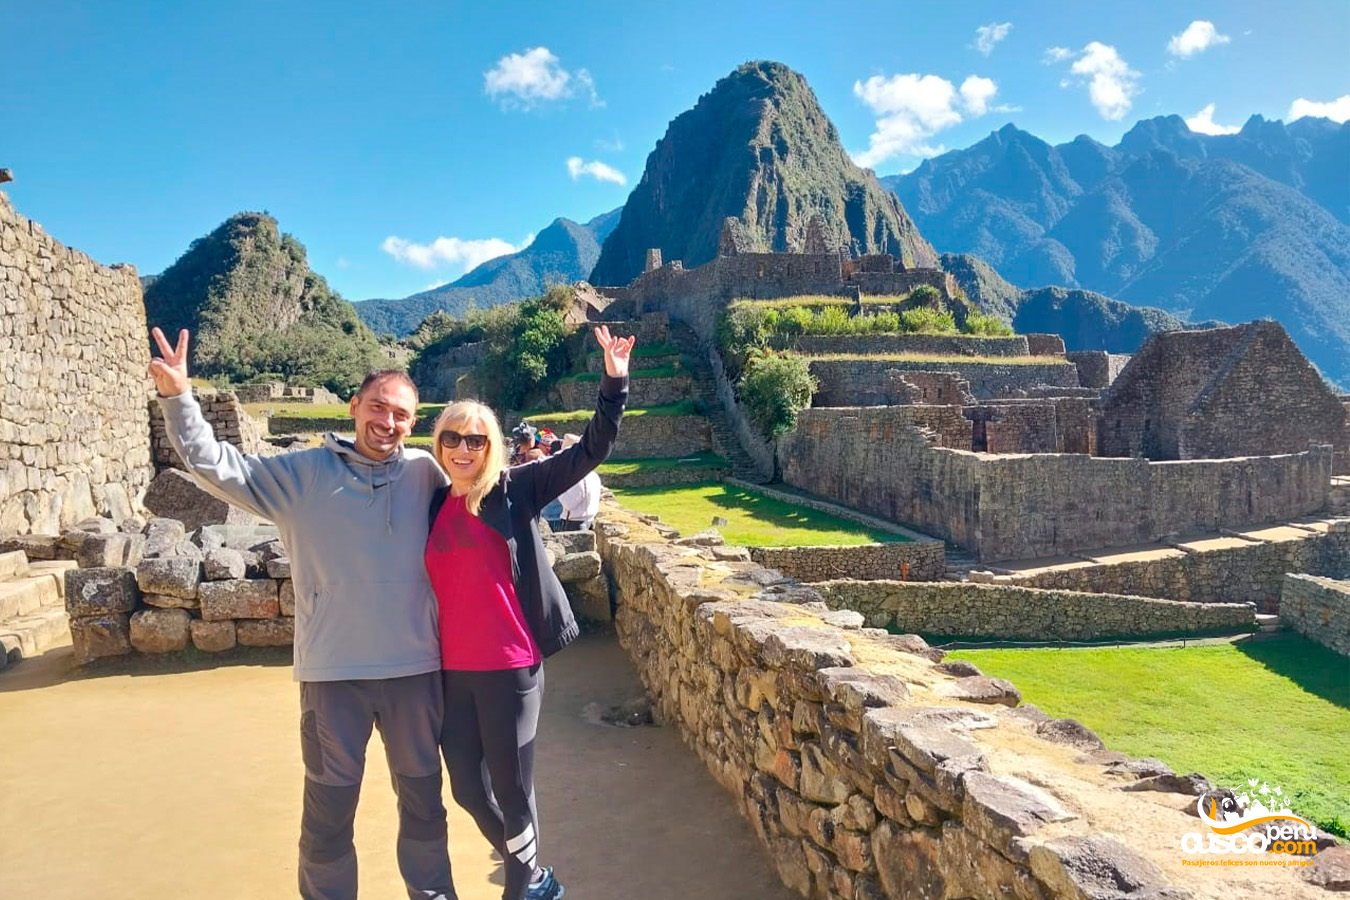 Inca city of Machu Picchu. Source: CuscoPeru.com